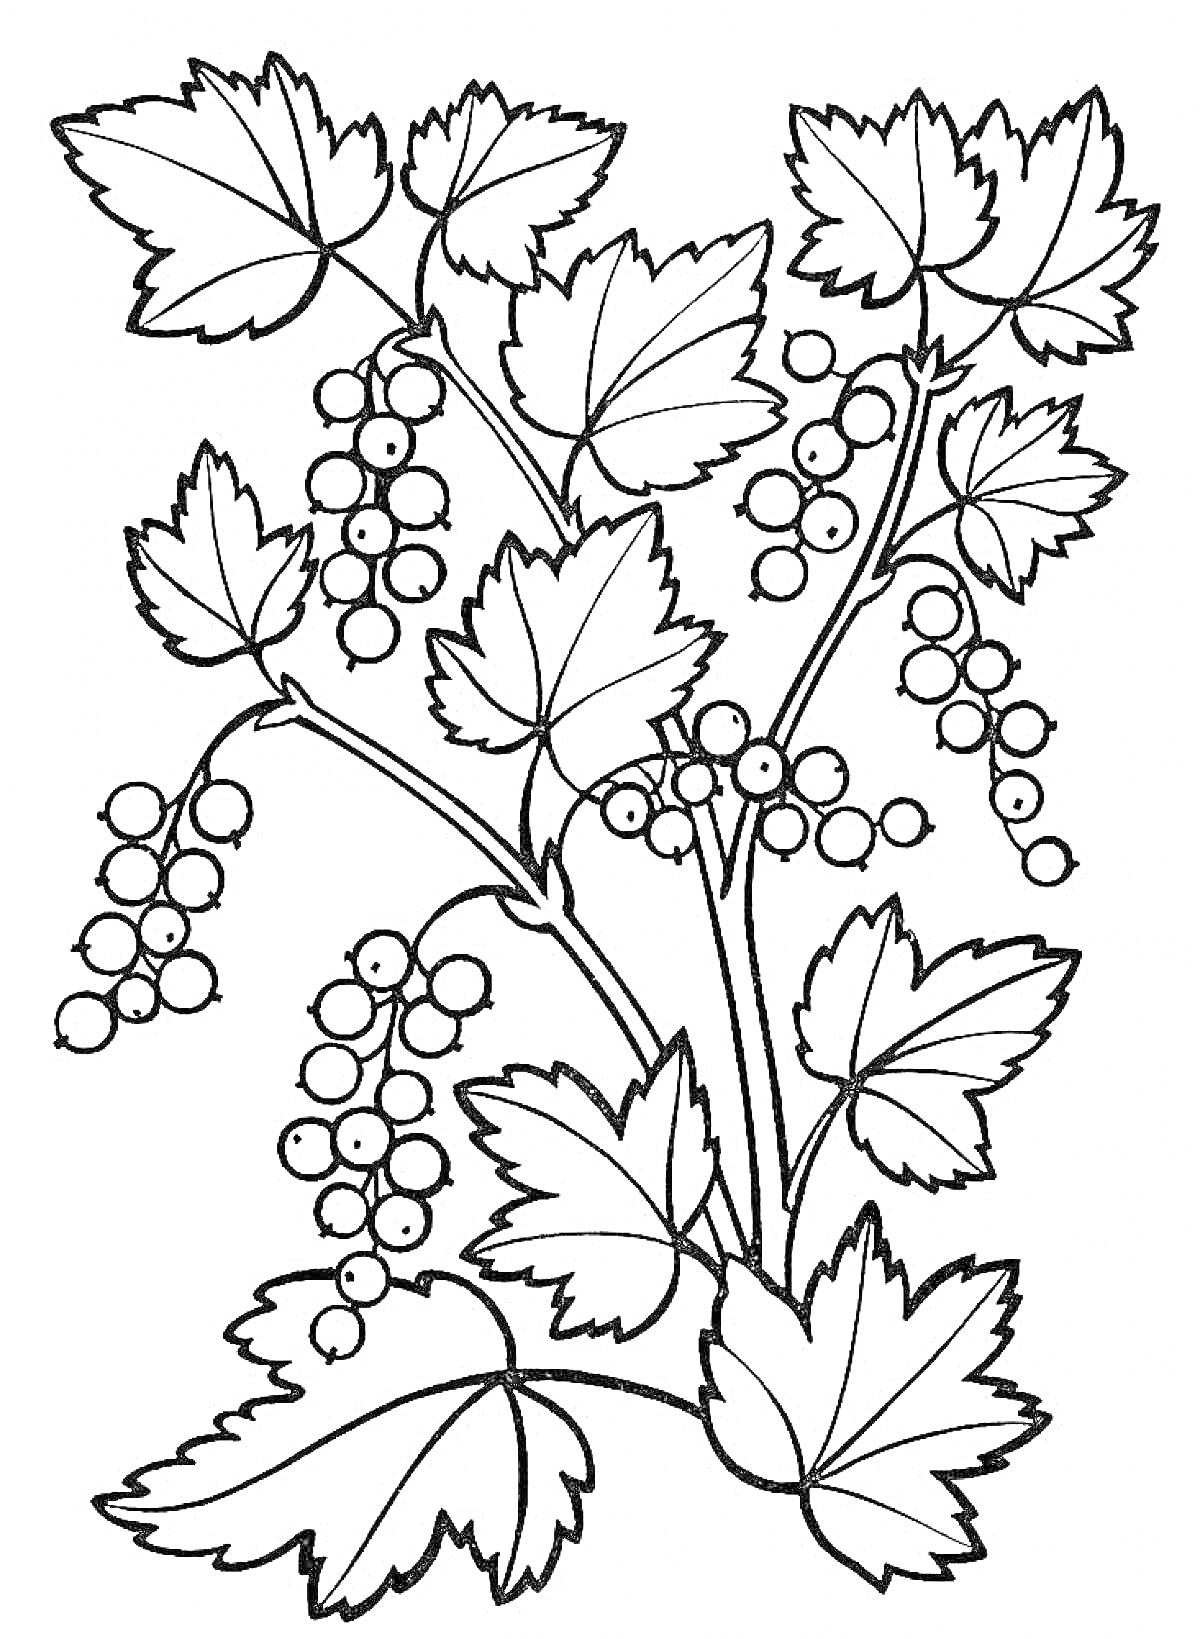 Смородина с листьями и ягодами на ветке